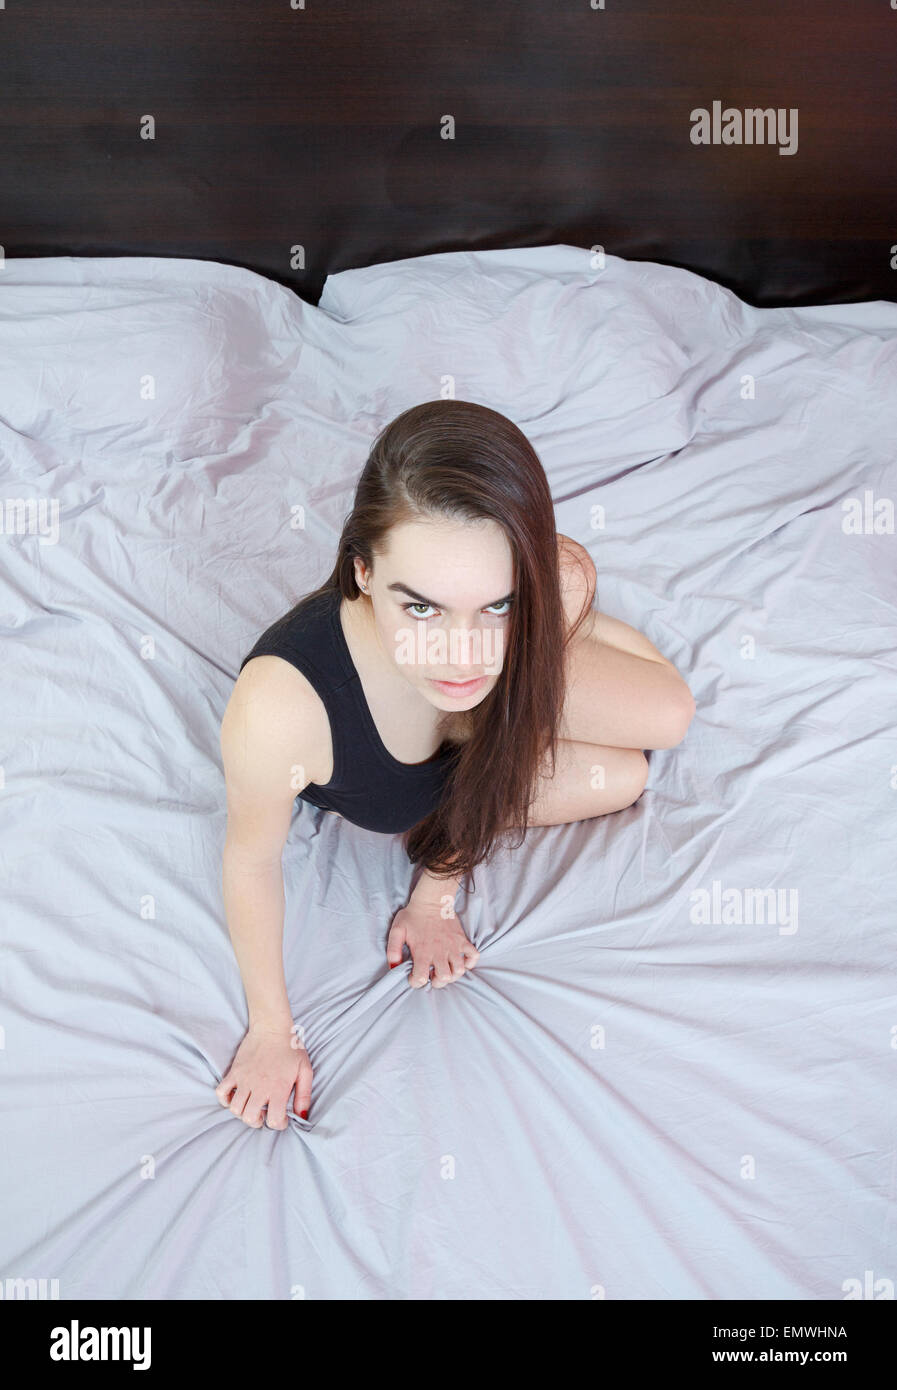 Porträt von sexy junge leidenschaftliche Frau oder Mädchen in verführerischen Pose auf grauen Blatt Bett im Schlafzimmer liegen und Blick auf Kamera oder y Stockfoto